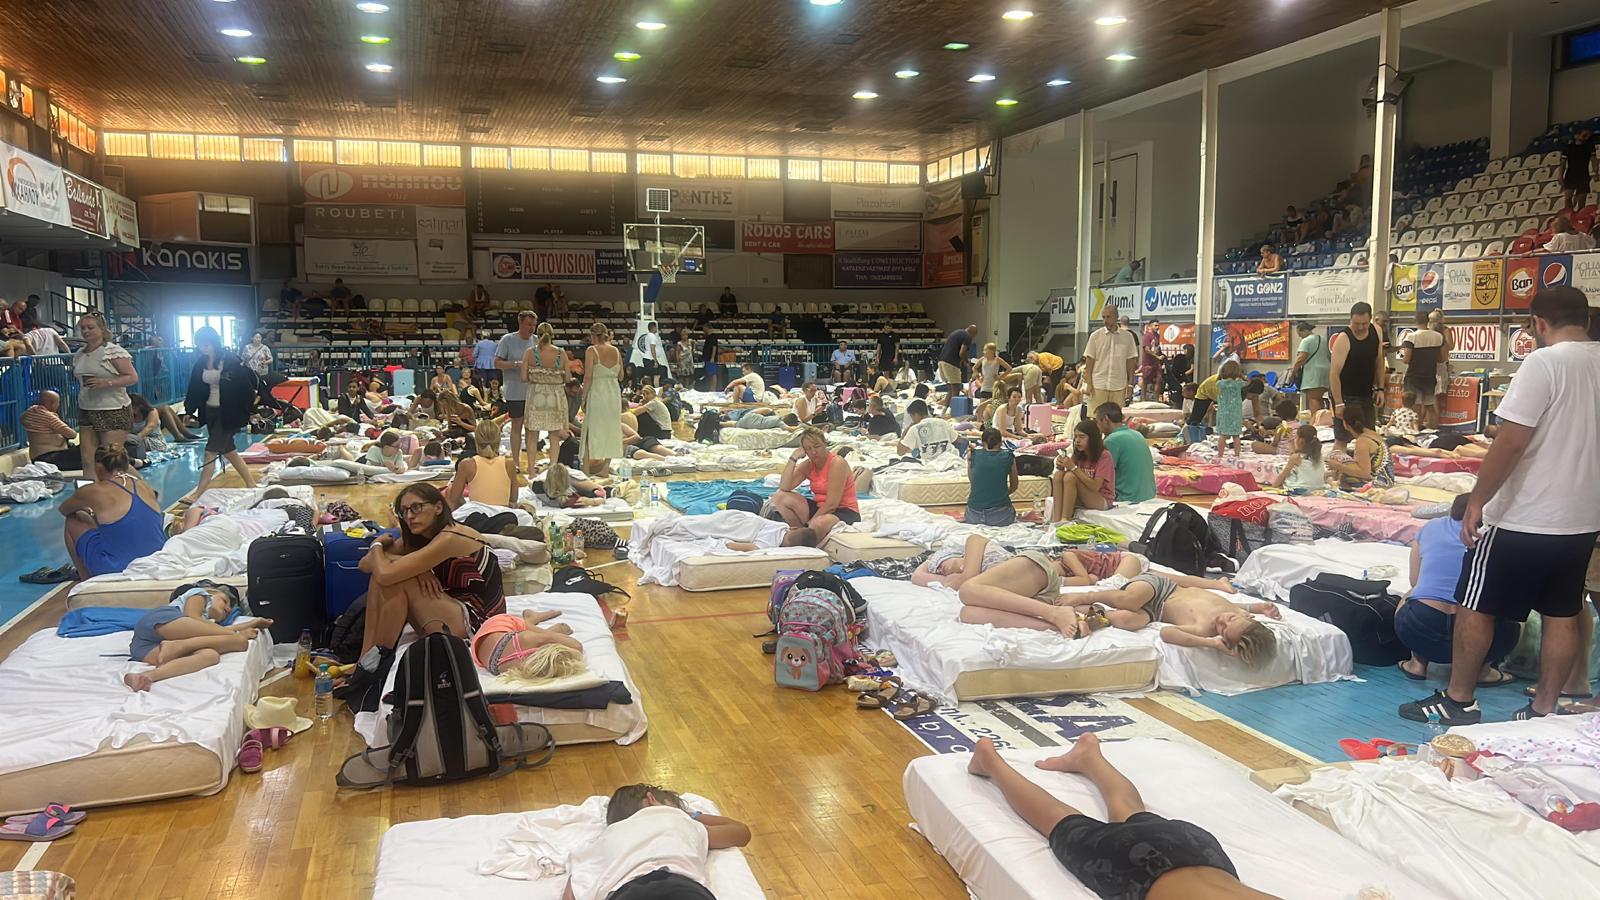 Bilder zeigen Touristen, die nach der Evakuierung auf Matratzen in Schulturnhallen schlafen